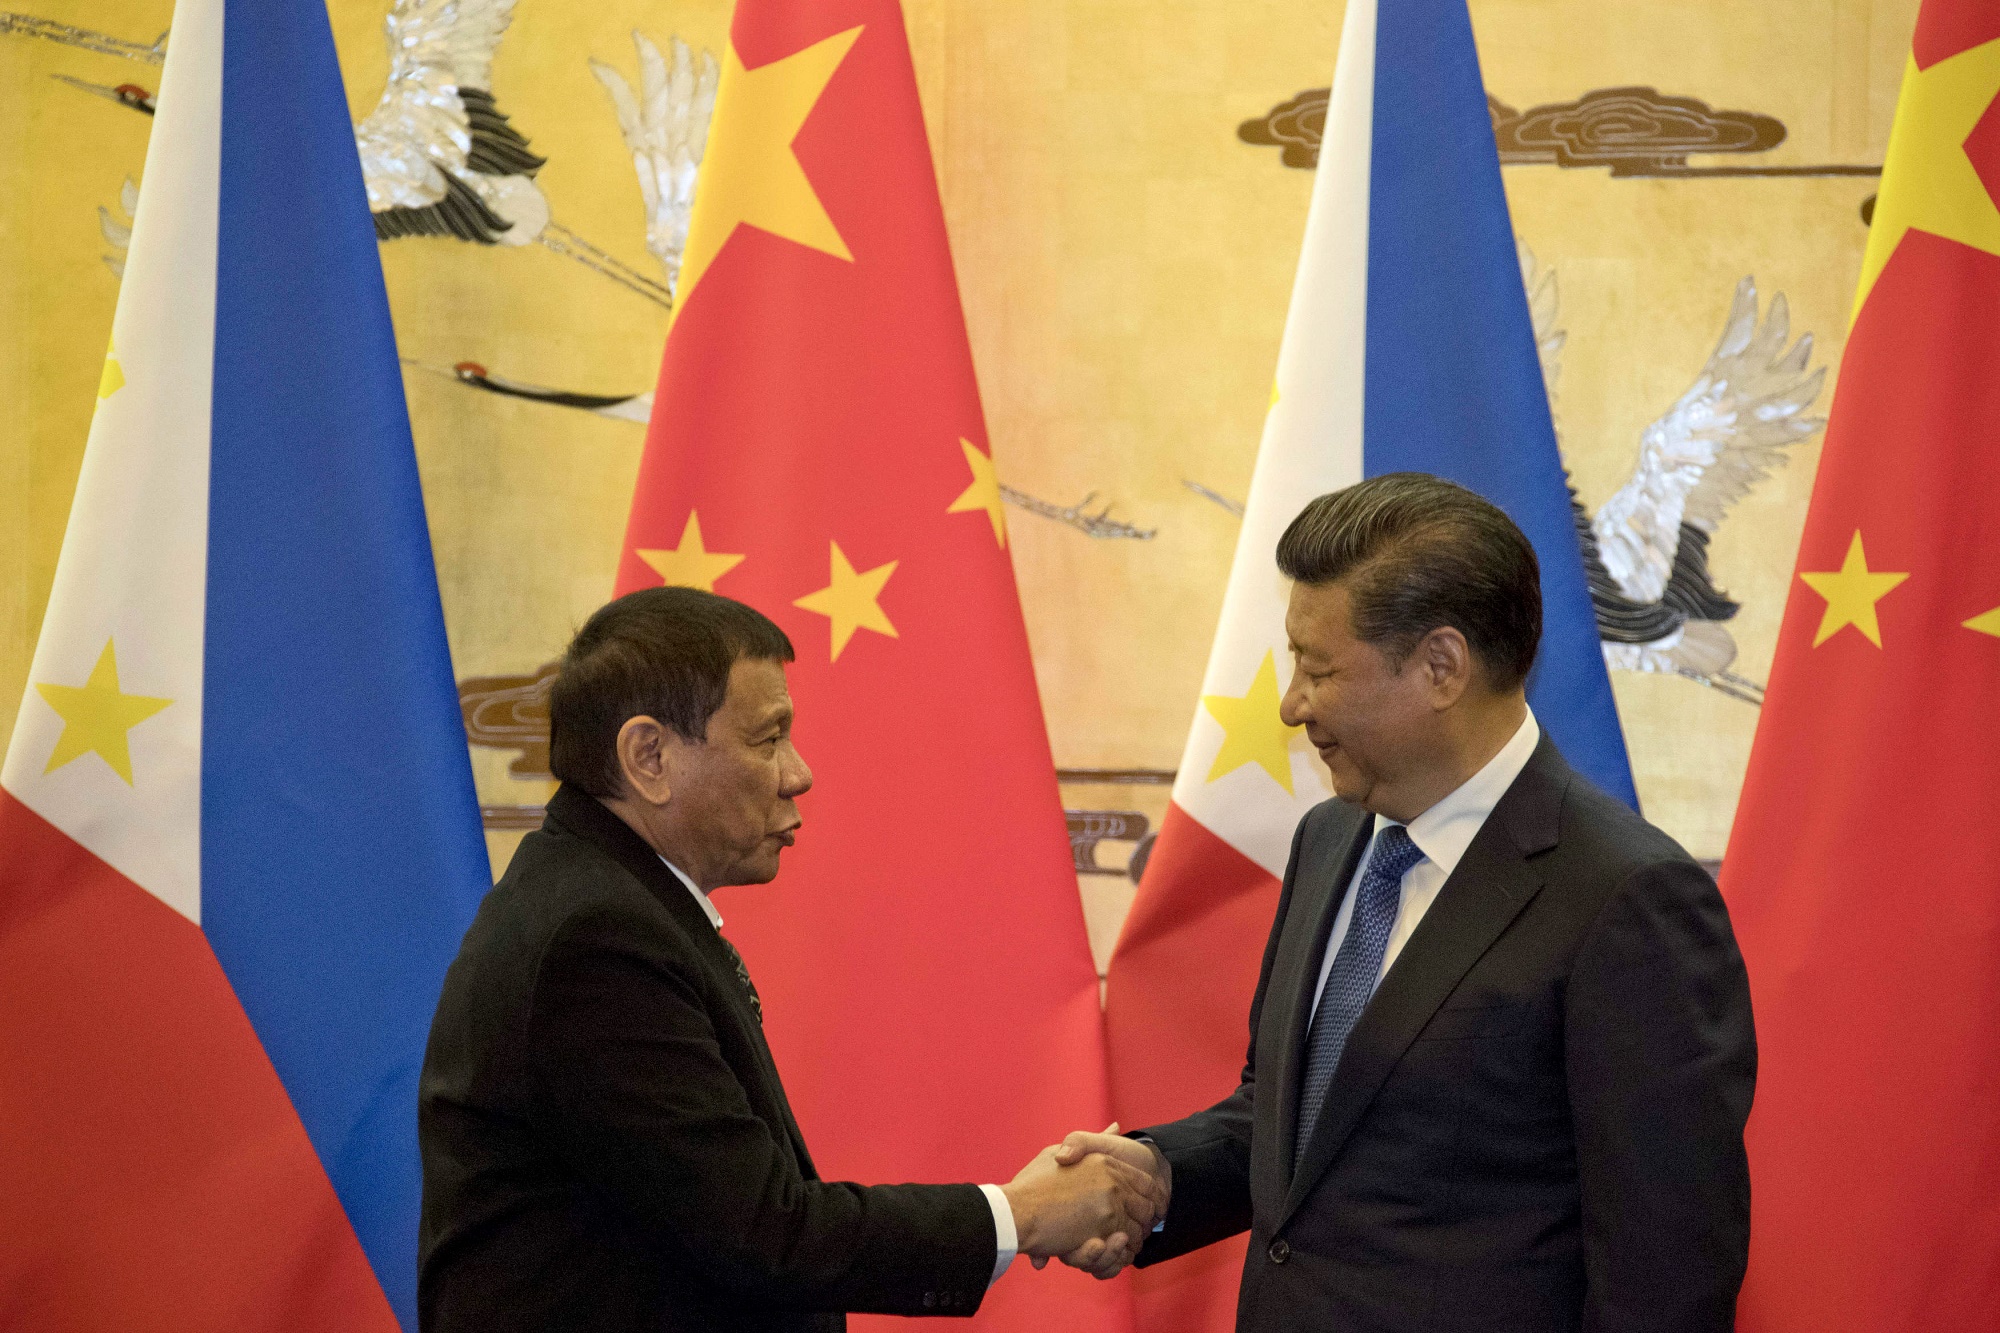 Ông Duterte có xu hướng xích lại gần với Trung Quốc thay vì ngả hẳn theo đồng minh lâu năm là Mỹ. Trong ảnh: Chủ tịch Trung Quốc Tập Cận Bình (phải) và Tổng thống Philippines Rodrigo Duterte (trái) tại cuộc gặp ở Bắc Kinh, Trung Quốc, ngày 20/10/2016. (Nguồn: AFP/TTXVN)